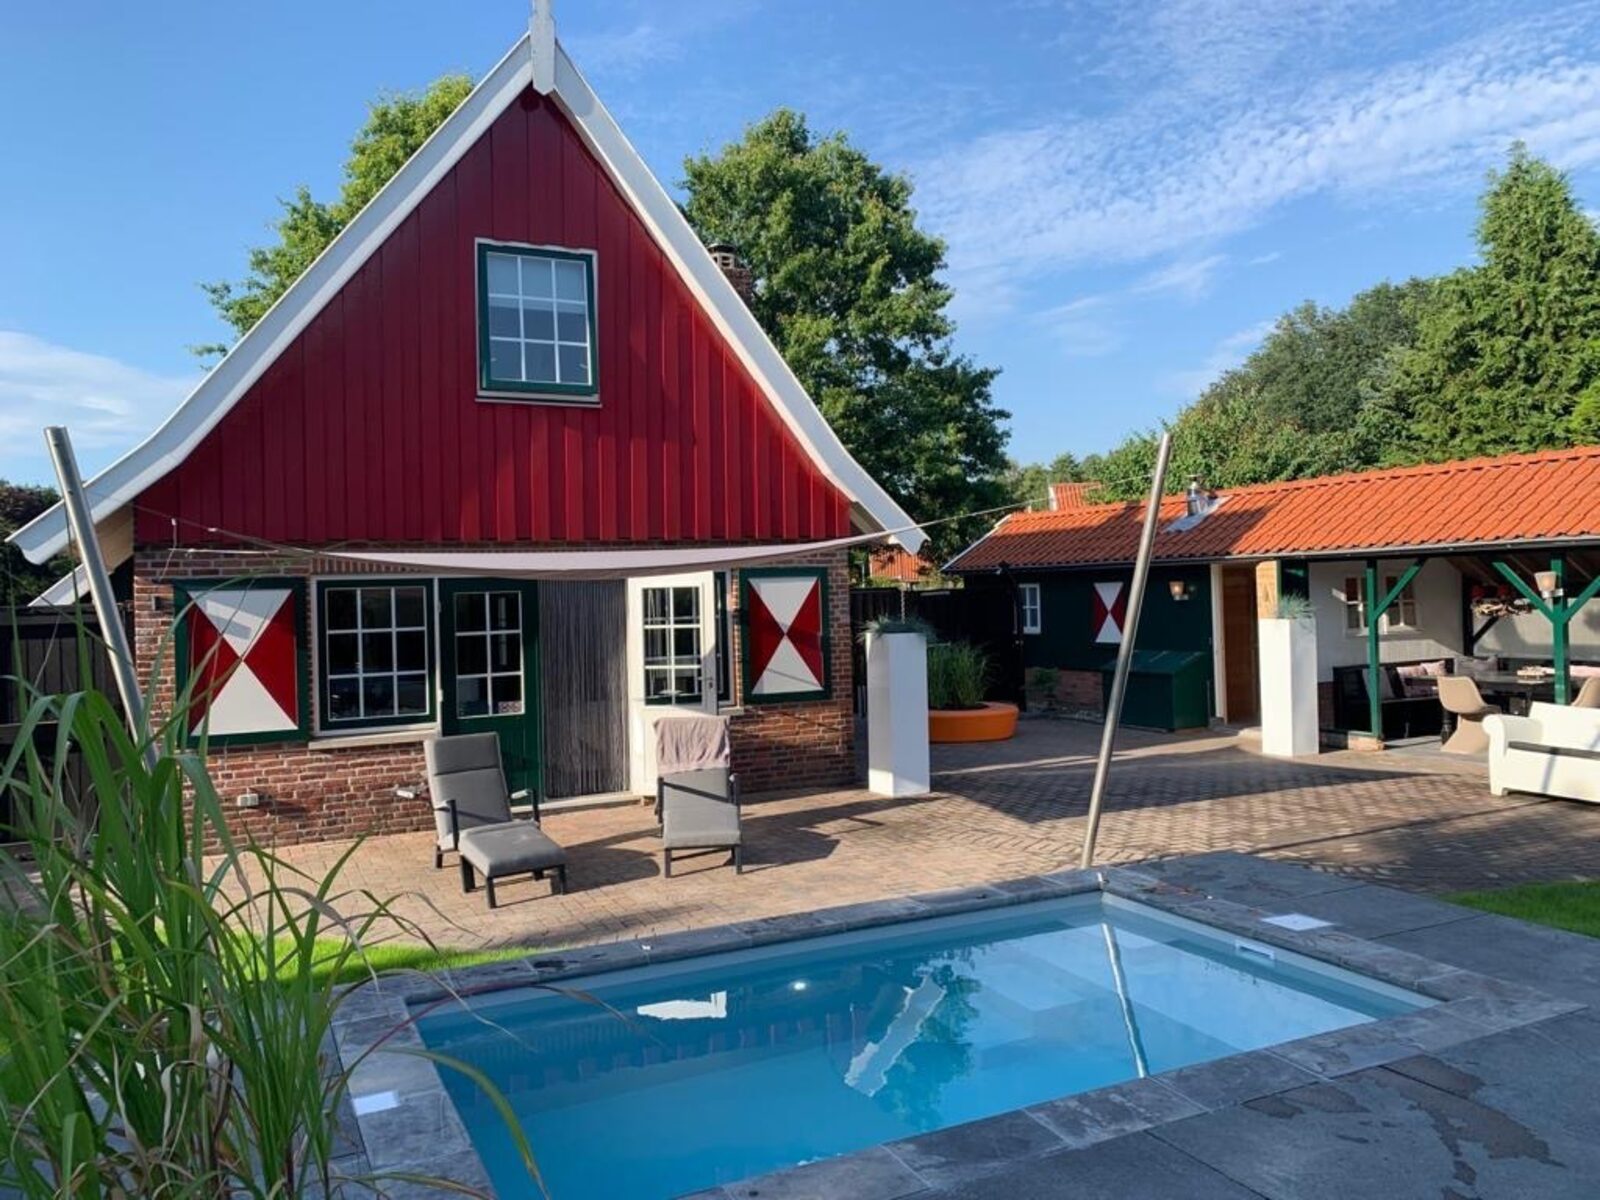 Vakantiehuis Madelief met zwembad - Onthaasten in de Achterhoek - Nederland - Gelderland - Lievelde